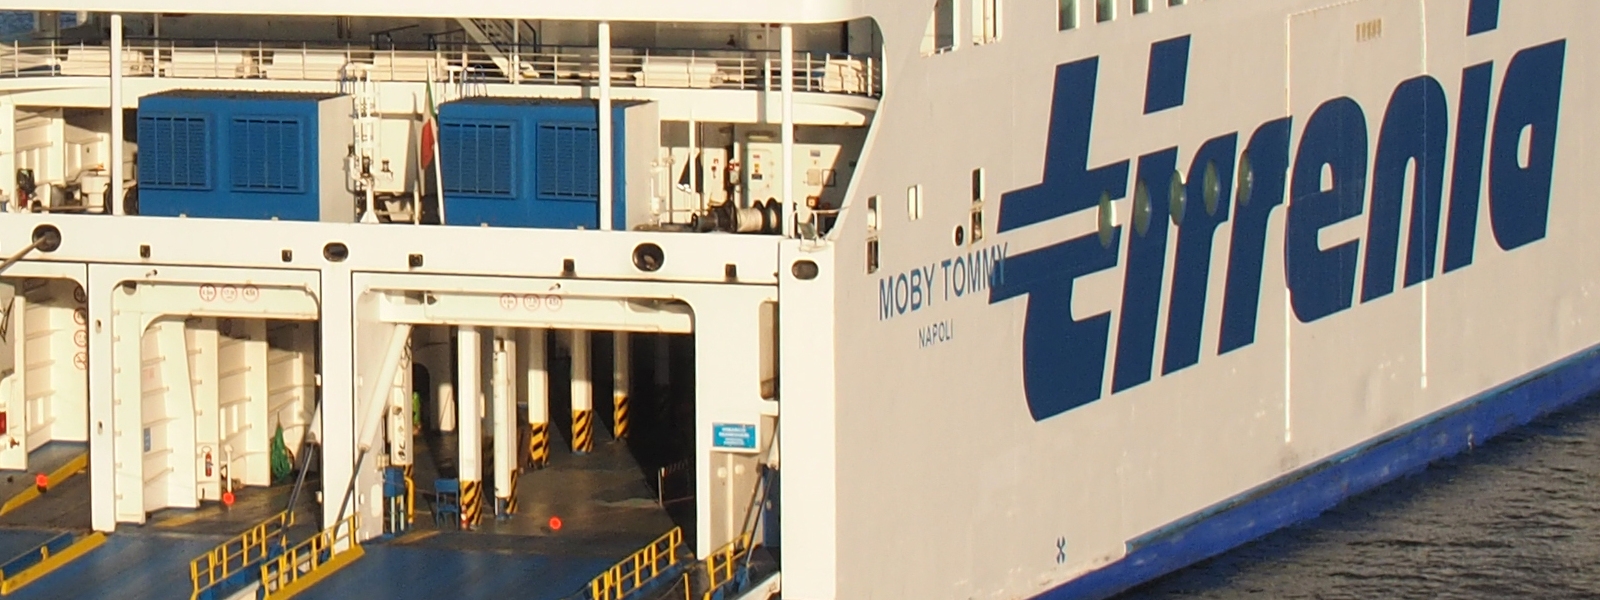 Navi Tirrenia Cin ferme nei porti, Uiltrasporti: garantire la continuità territoriale e l’occupazione